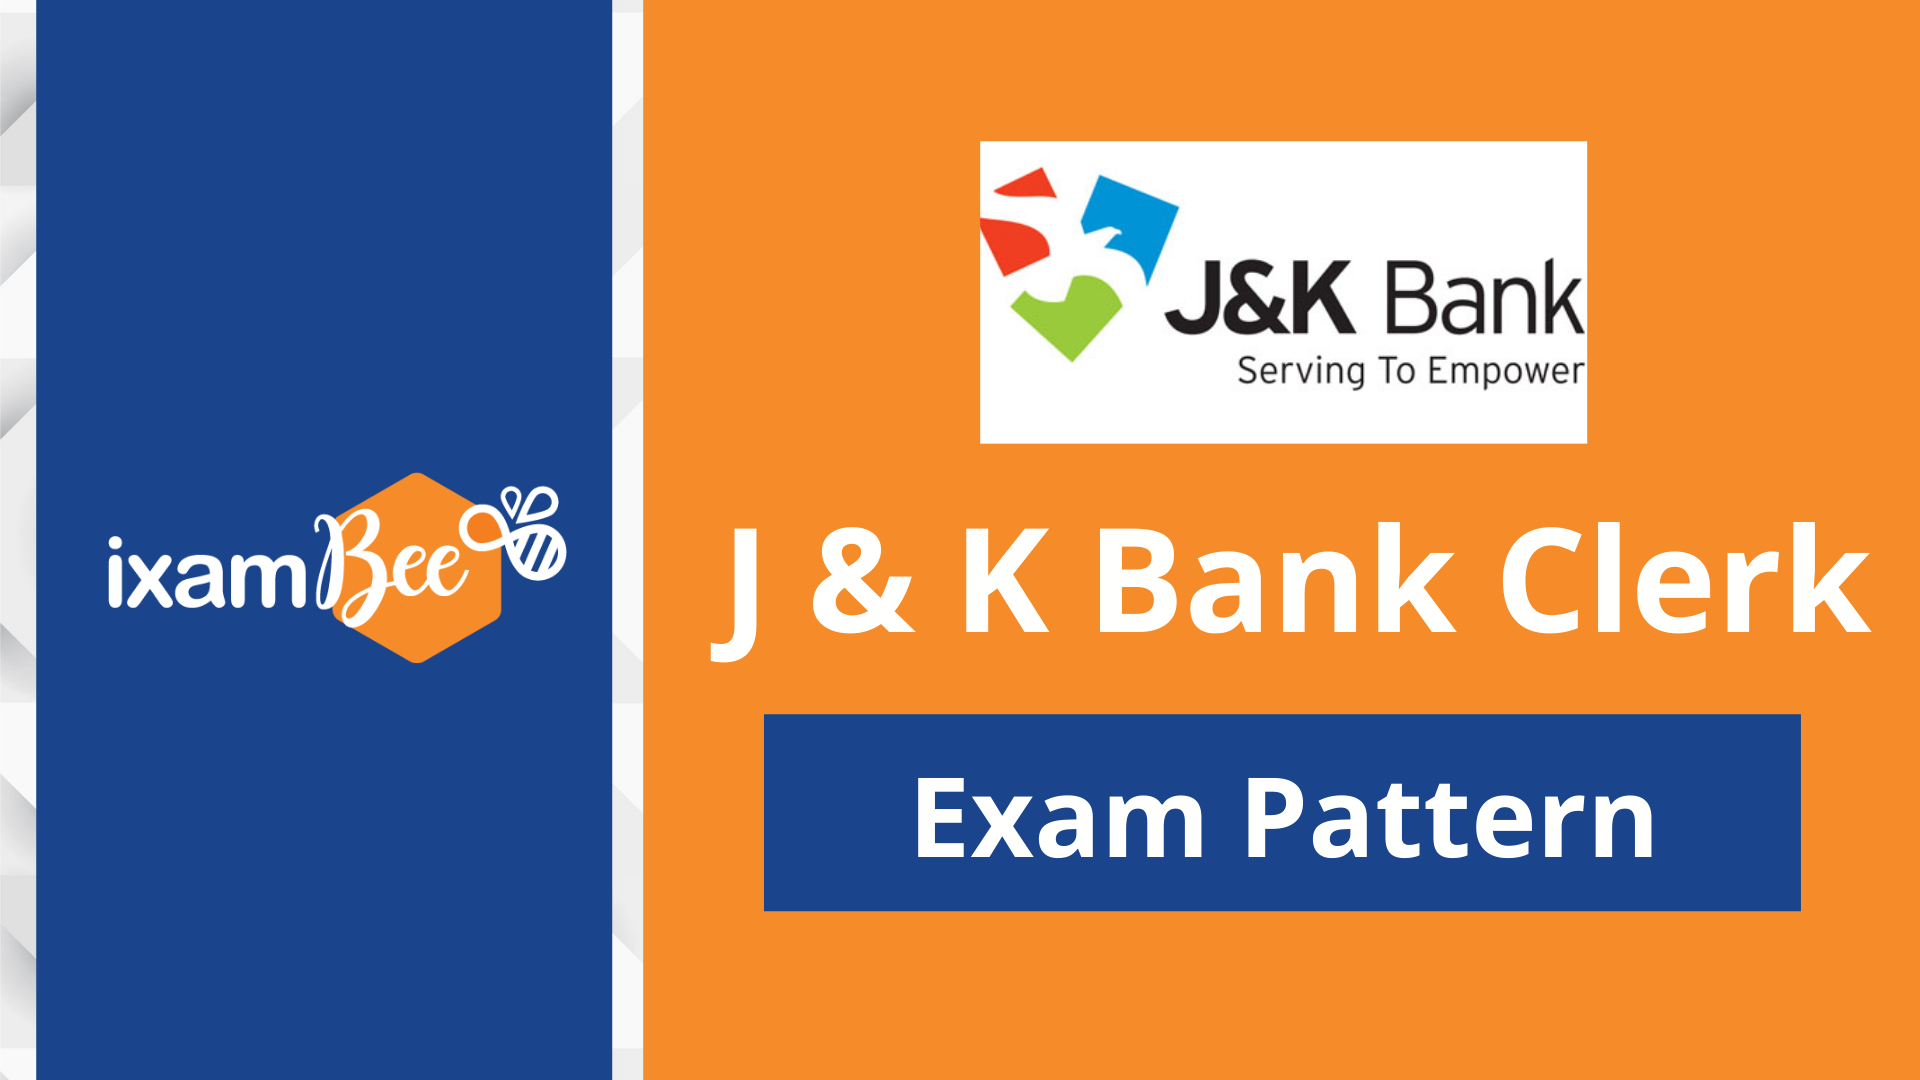 J&K Bank Clerk Exam Pattern